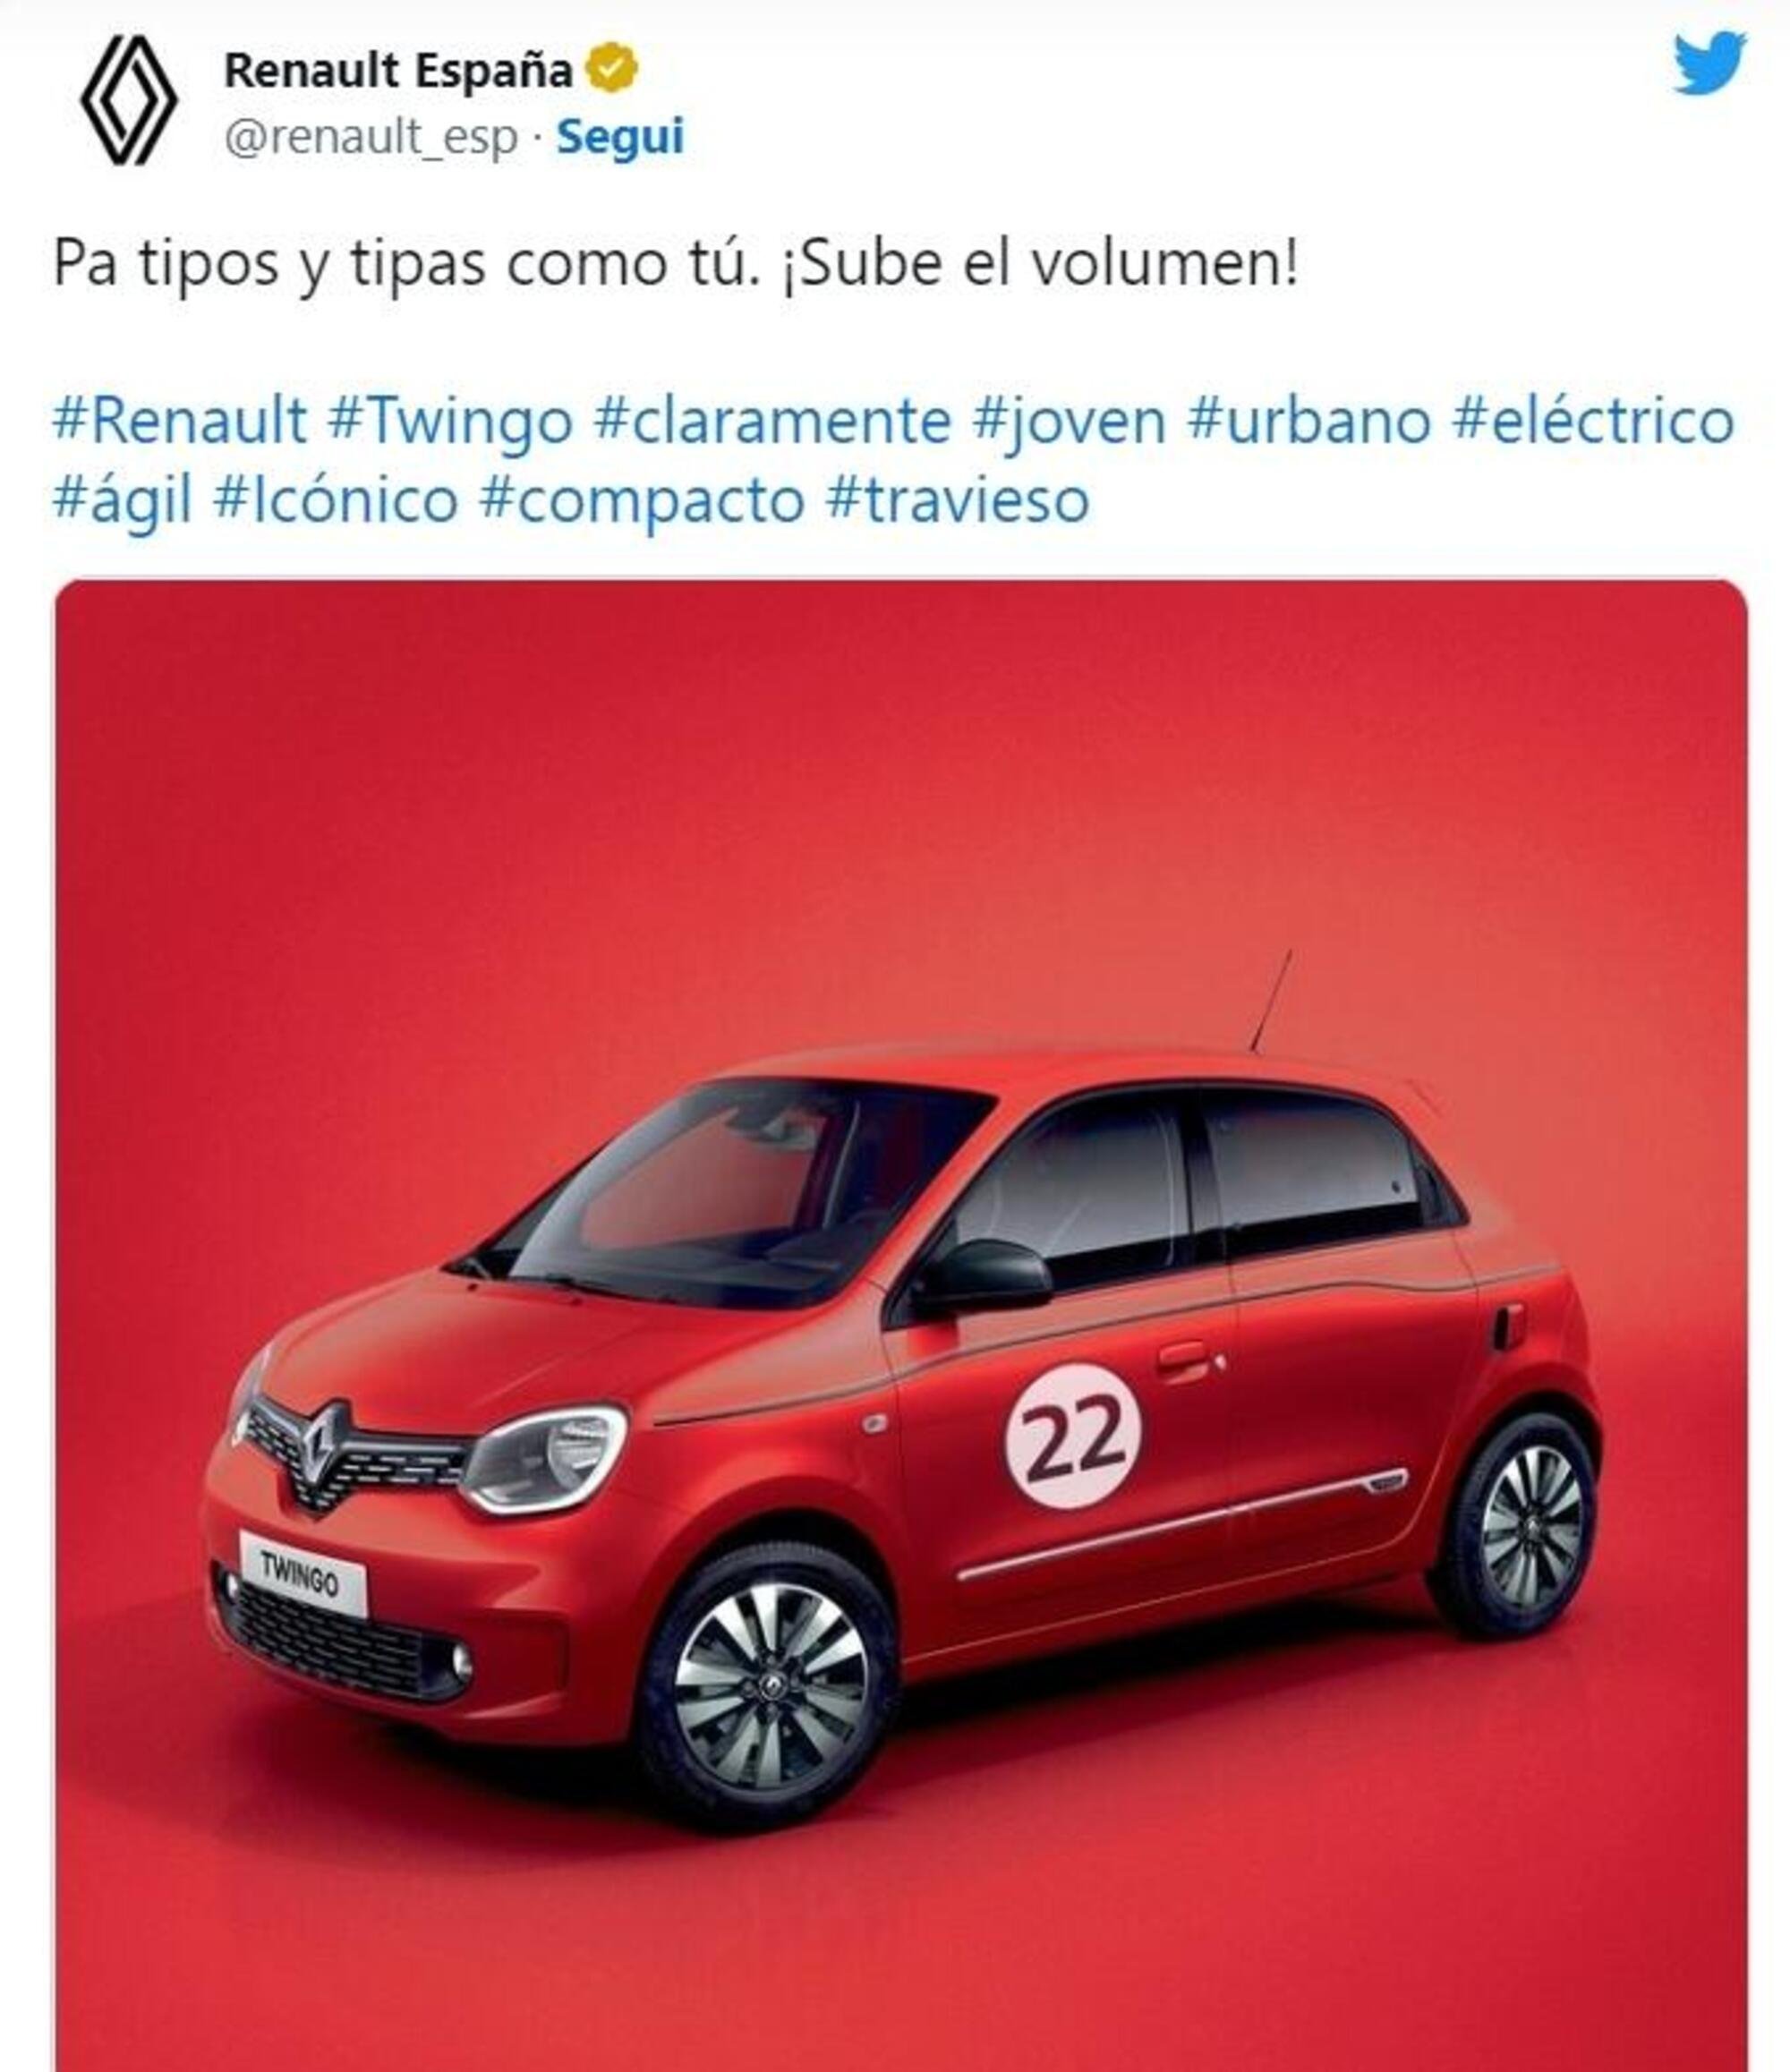 Il tweet di Renault Espana